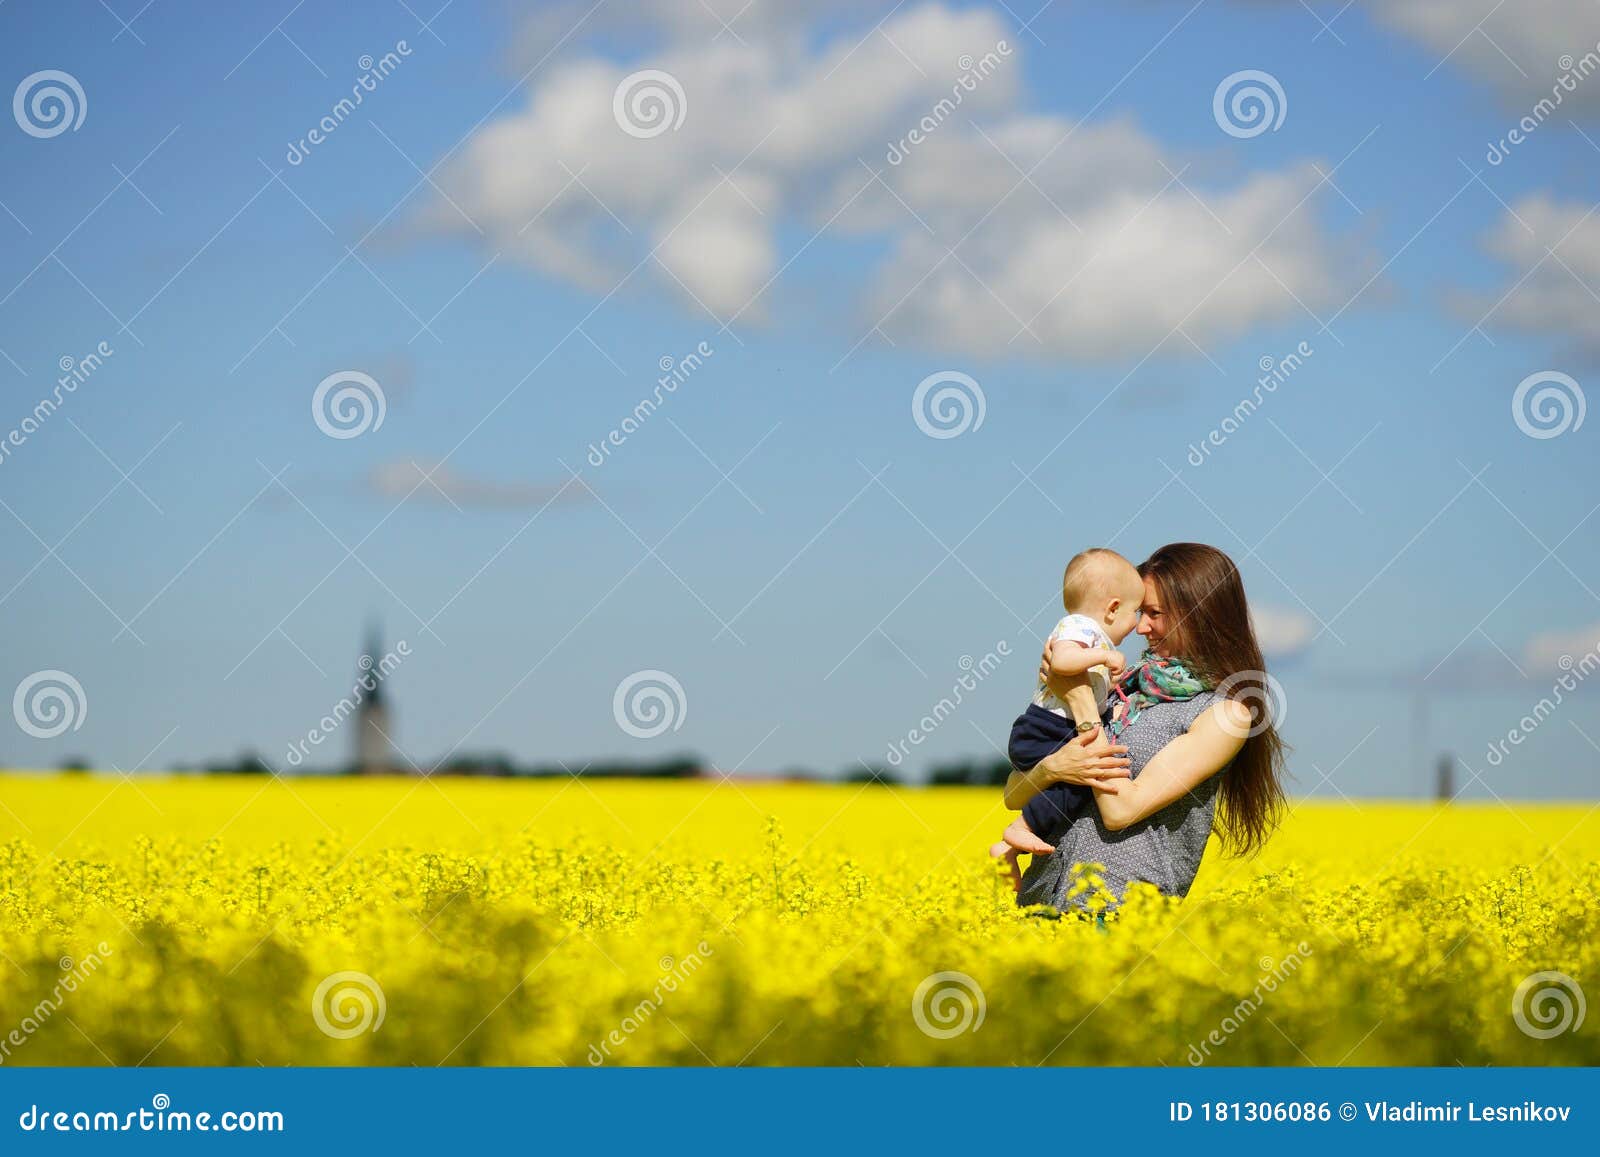 阳光明媚的夏日 艳蓝的天空 黄的草甸 在鲜黄的花田里 年轻母亲手抱着孩子库存照片 图片包括有幸福 父项